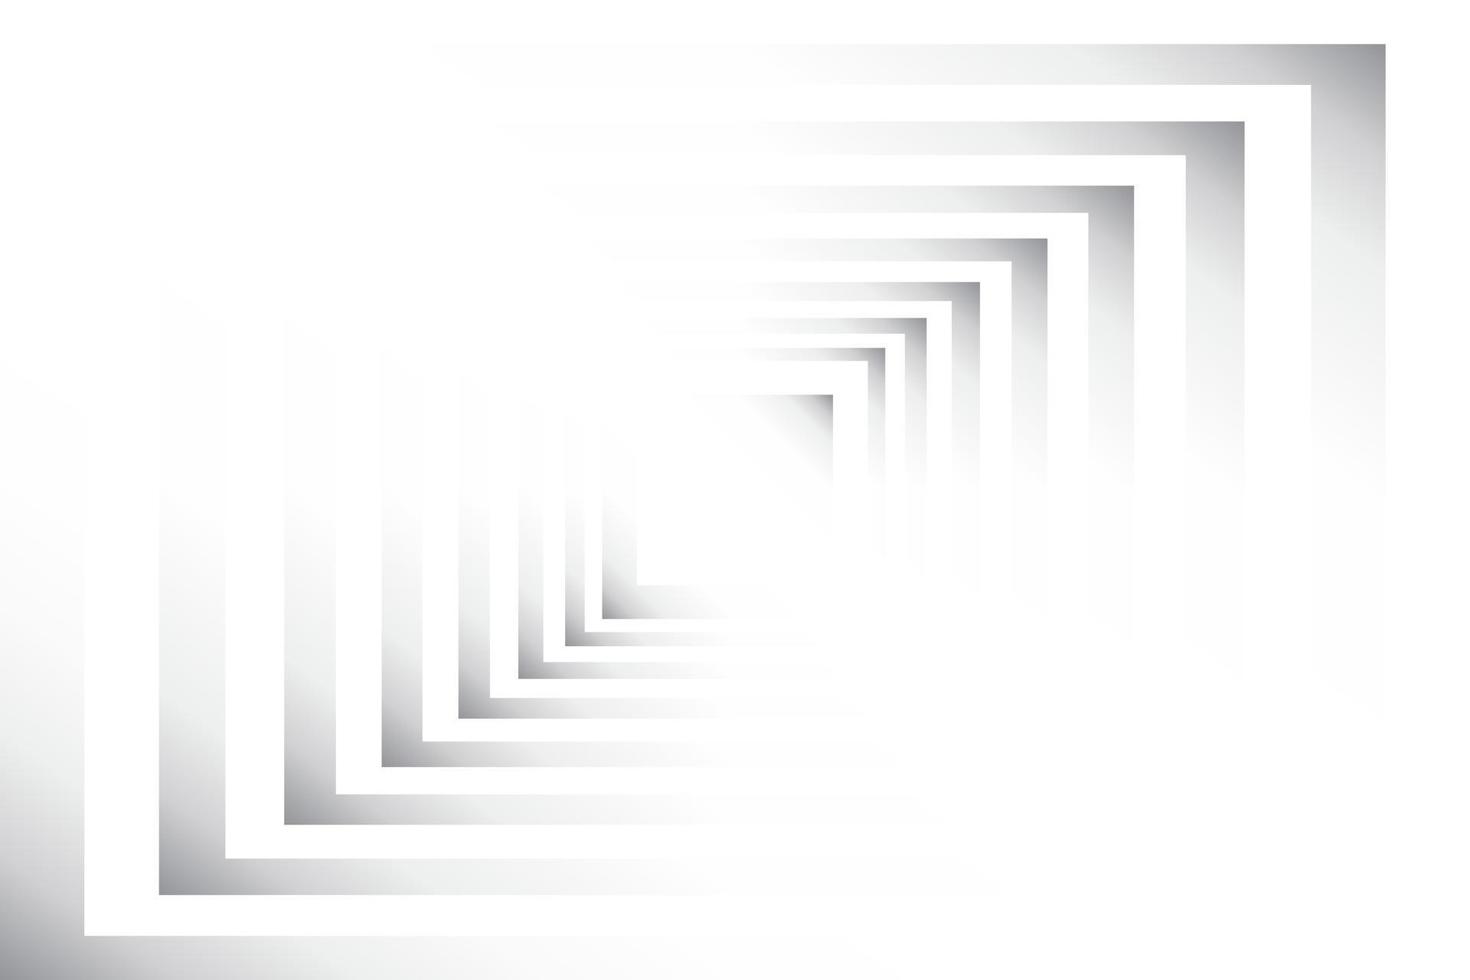 couleur blanche et grise abstraite, arrière-plan design moderne avec forme de rectangle géométrique. illustration vectorielle. vecteur